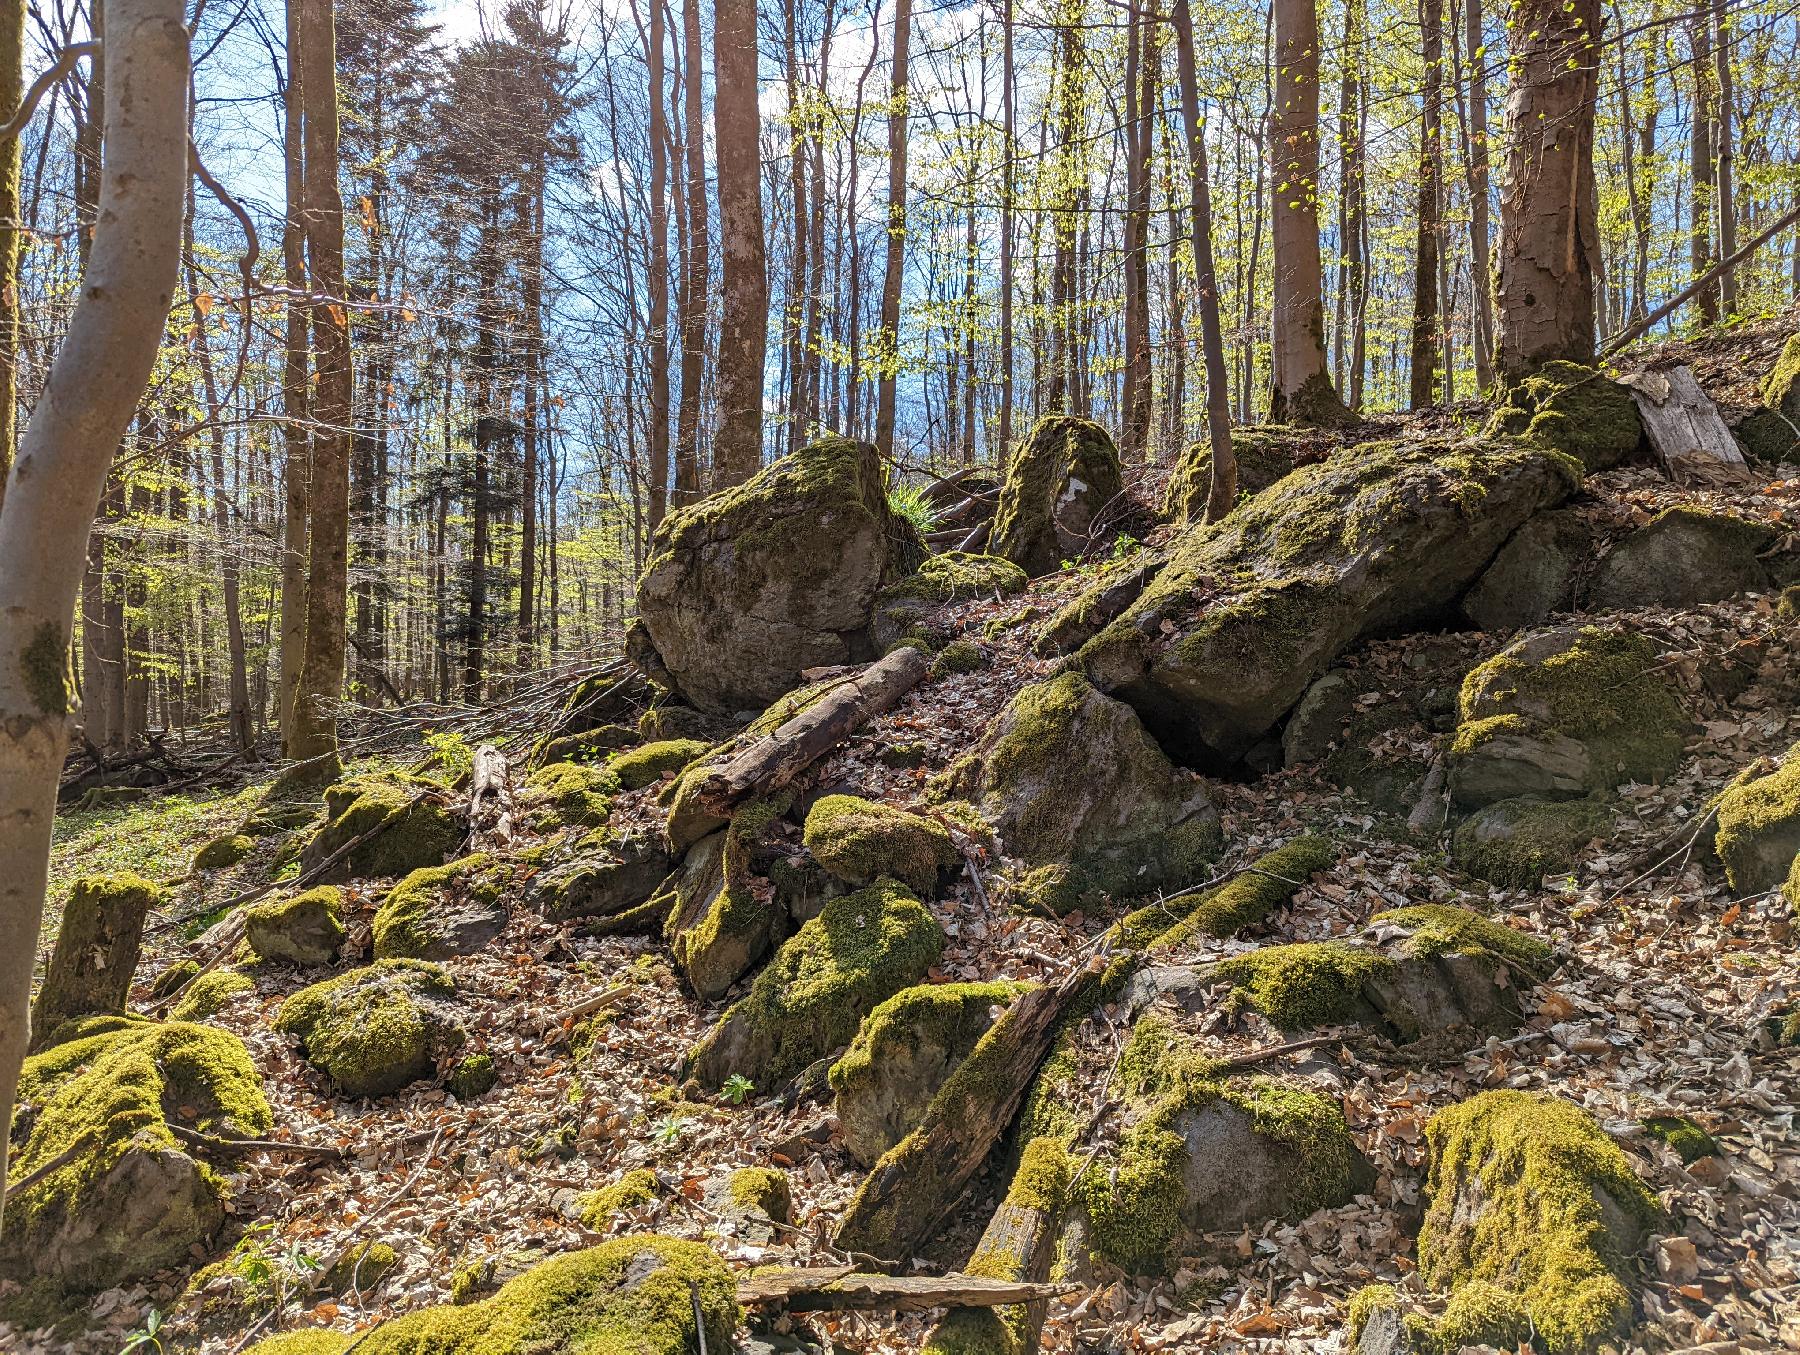 Felsen Spitzensteinheg in Grebenhain